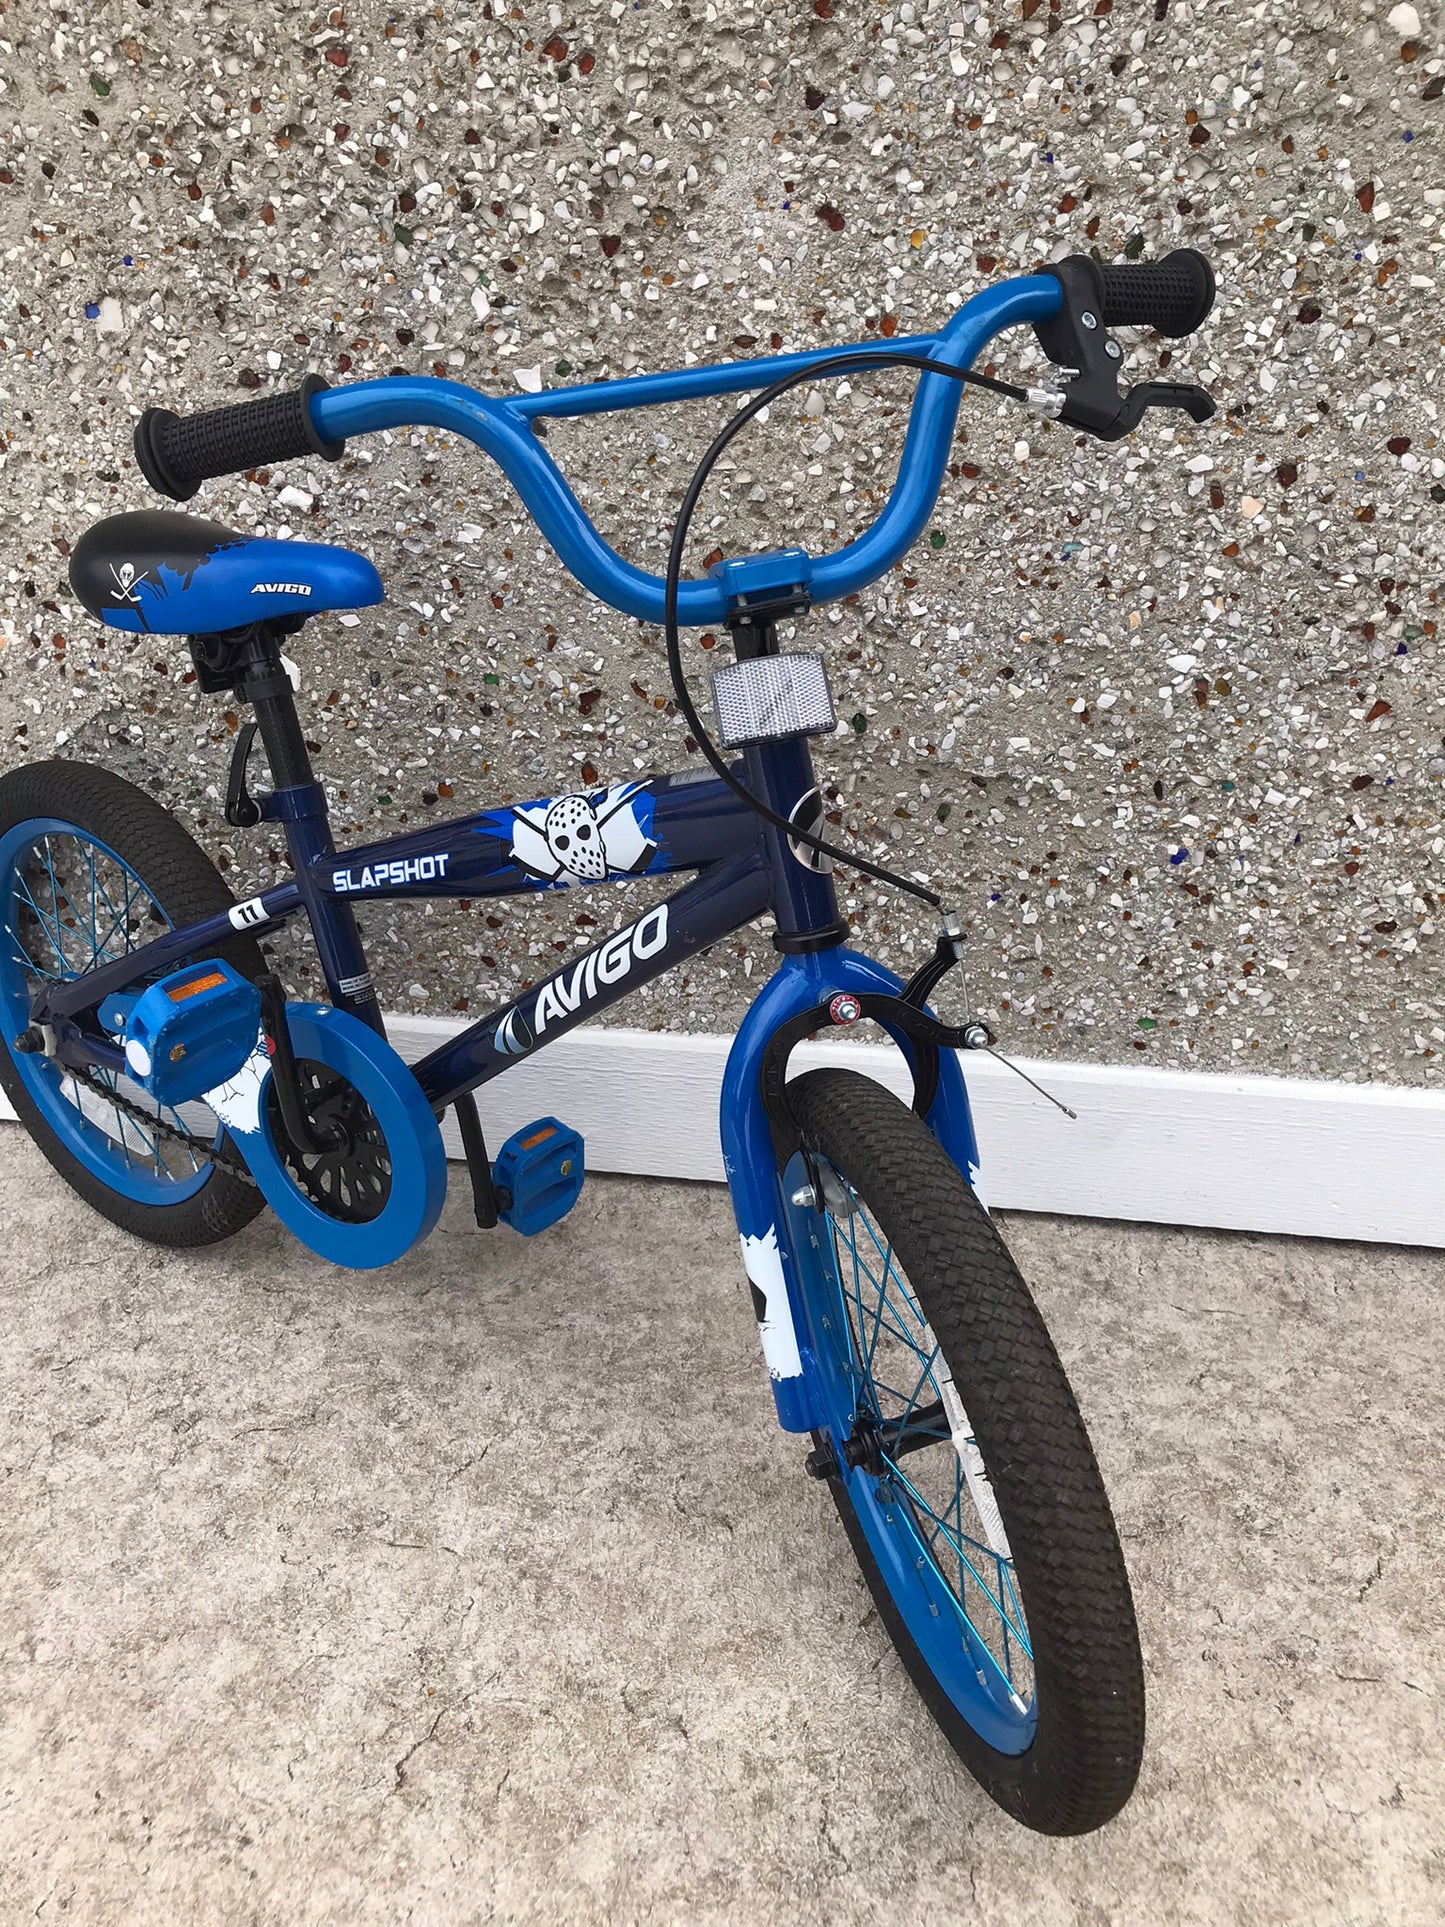 Bike Child Size 16 inch Avigo Slap Shot Hockey Blue As New